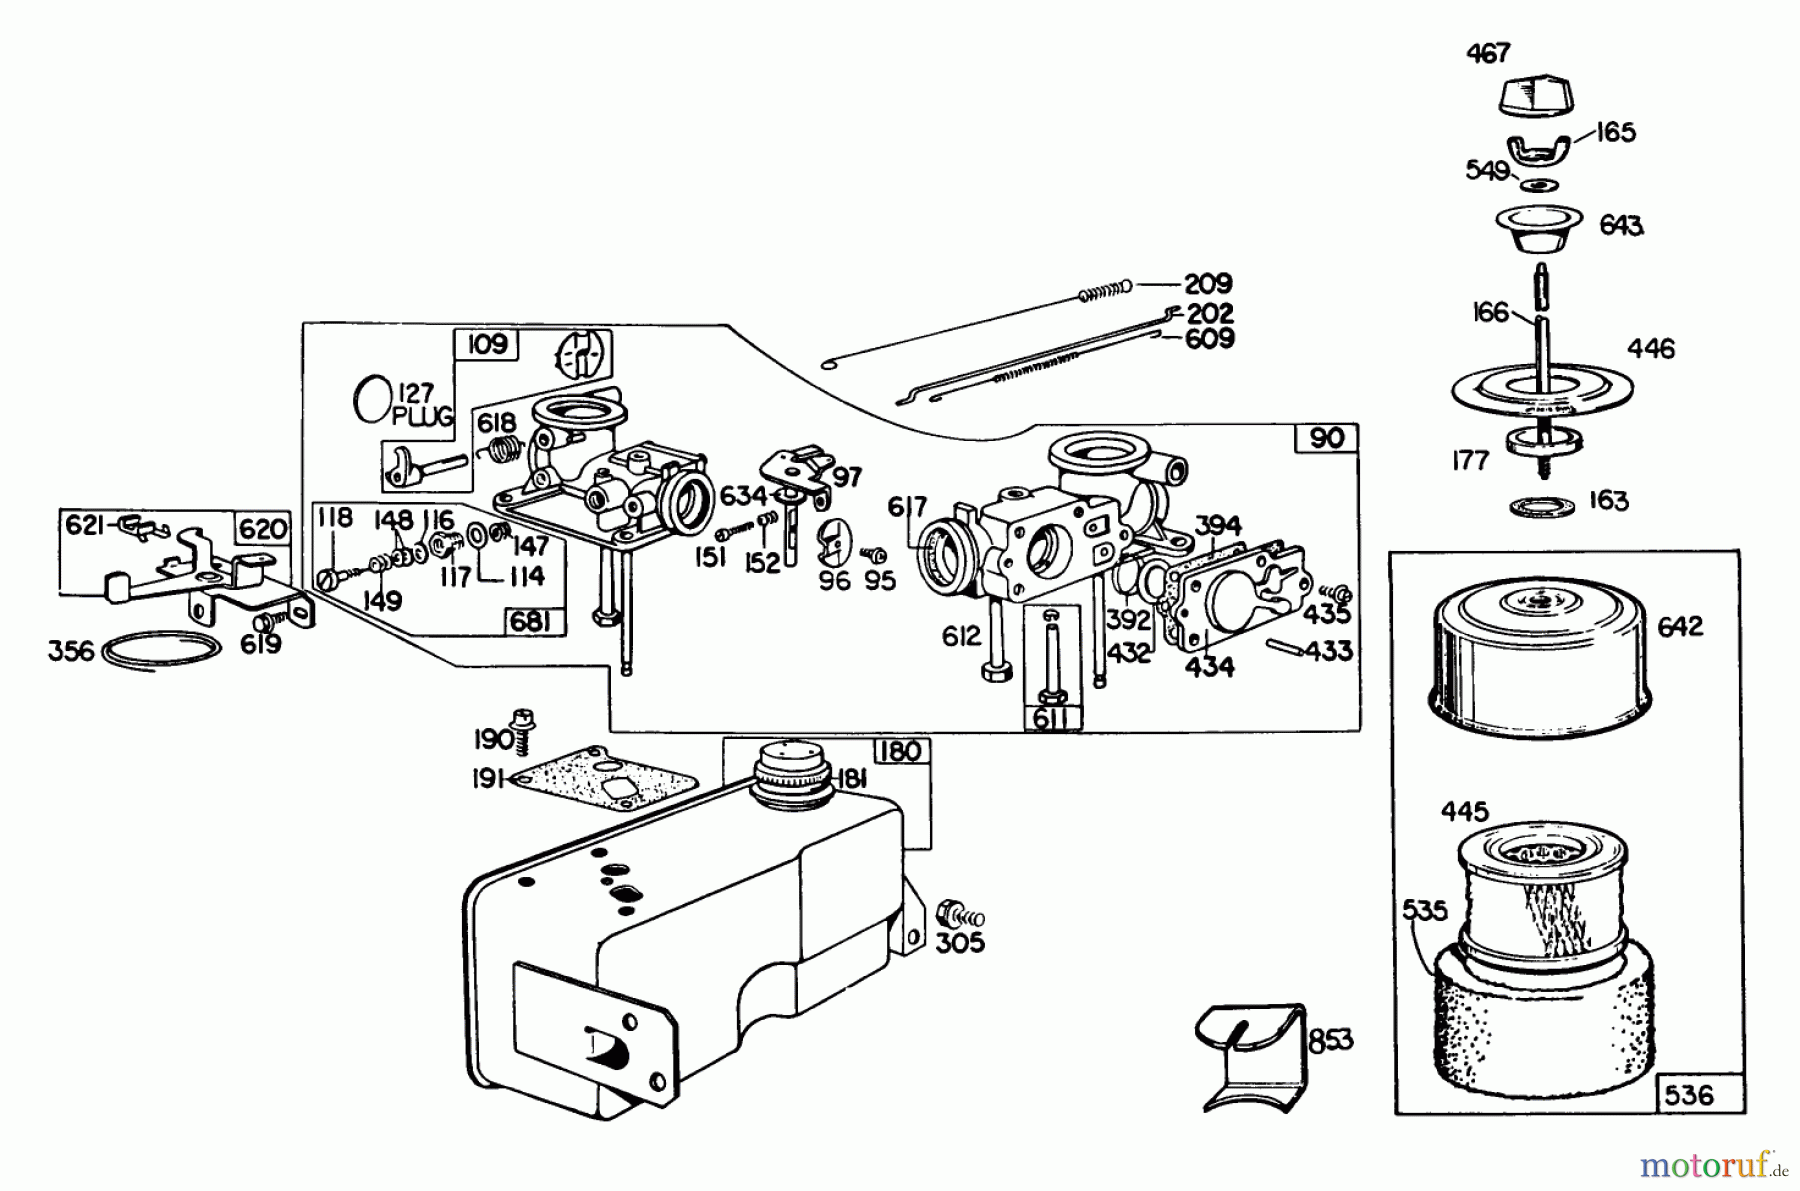  Toro Neu Mowers, Walk-Behind Seite 2 23022 - Toro Lawnmower, 1985 (5000001-5999999) ENGINE BRIGGS & STRATTON MODEL 130902-0543-01 #1